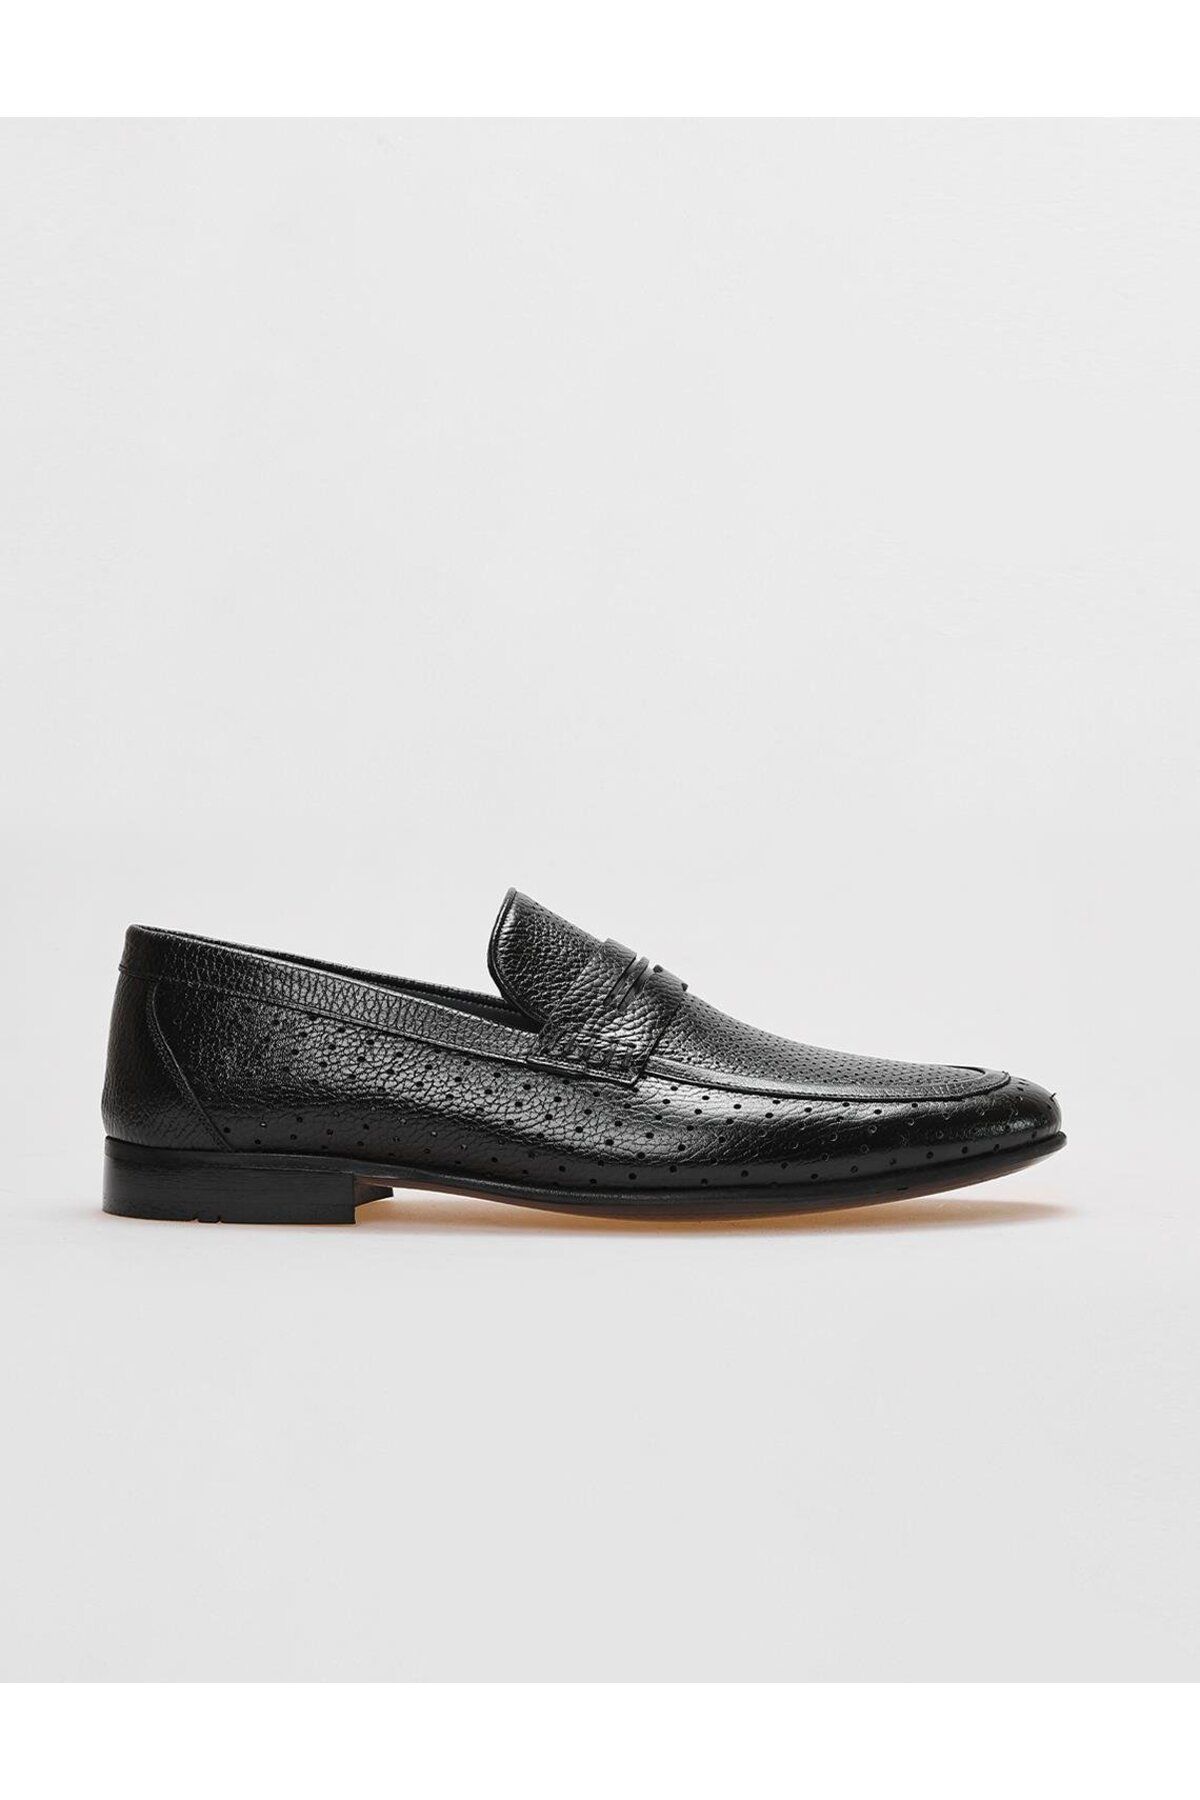 Cabani Hakiki Deri Siyah Kemer Detaylı Erkek Klasik Ayakkabı